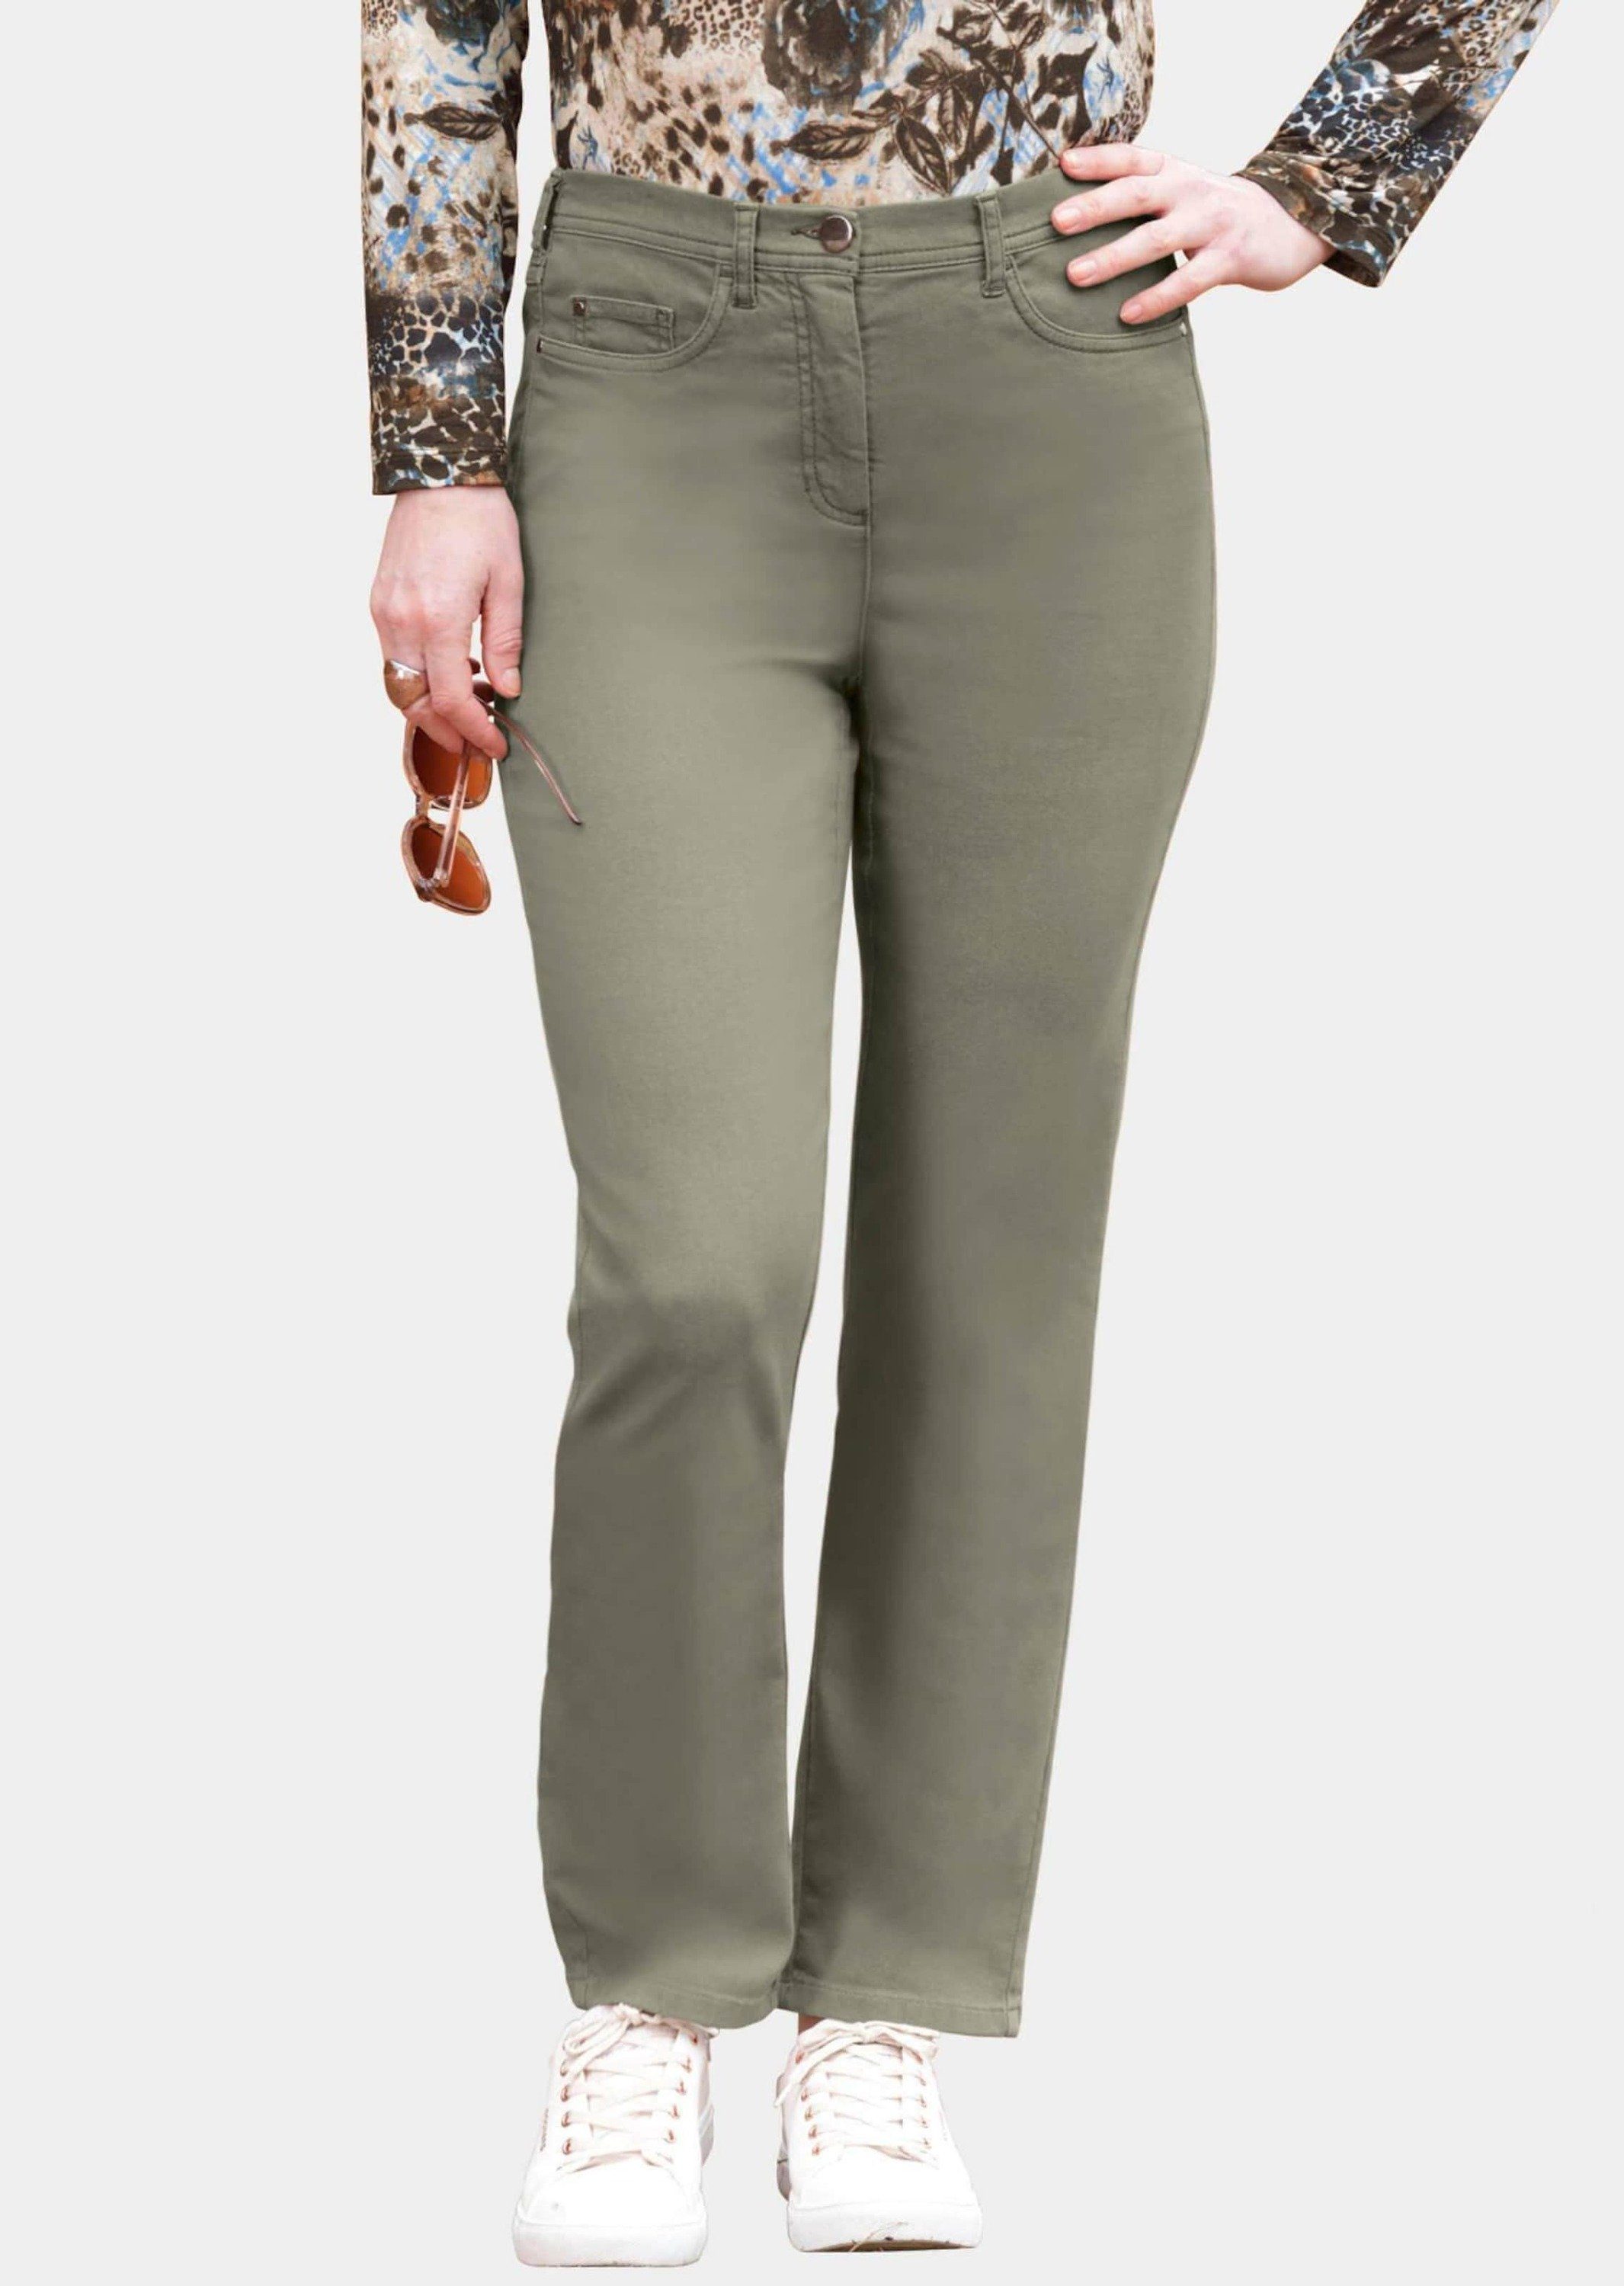 High-Stretch-Jeanshose moorgrün Bequeme Jeans Kurzgröße: Bequeme GOLDNER